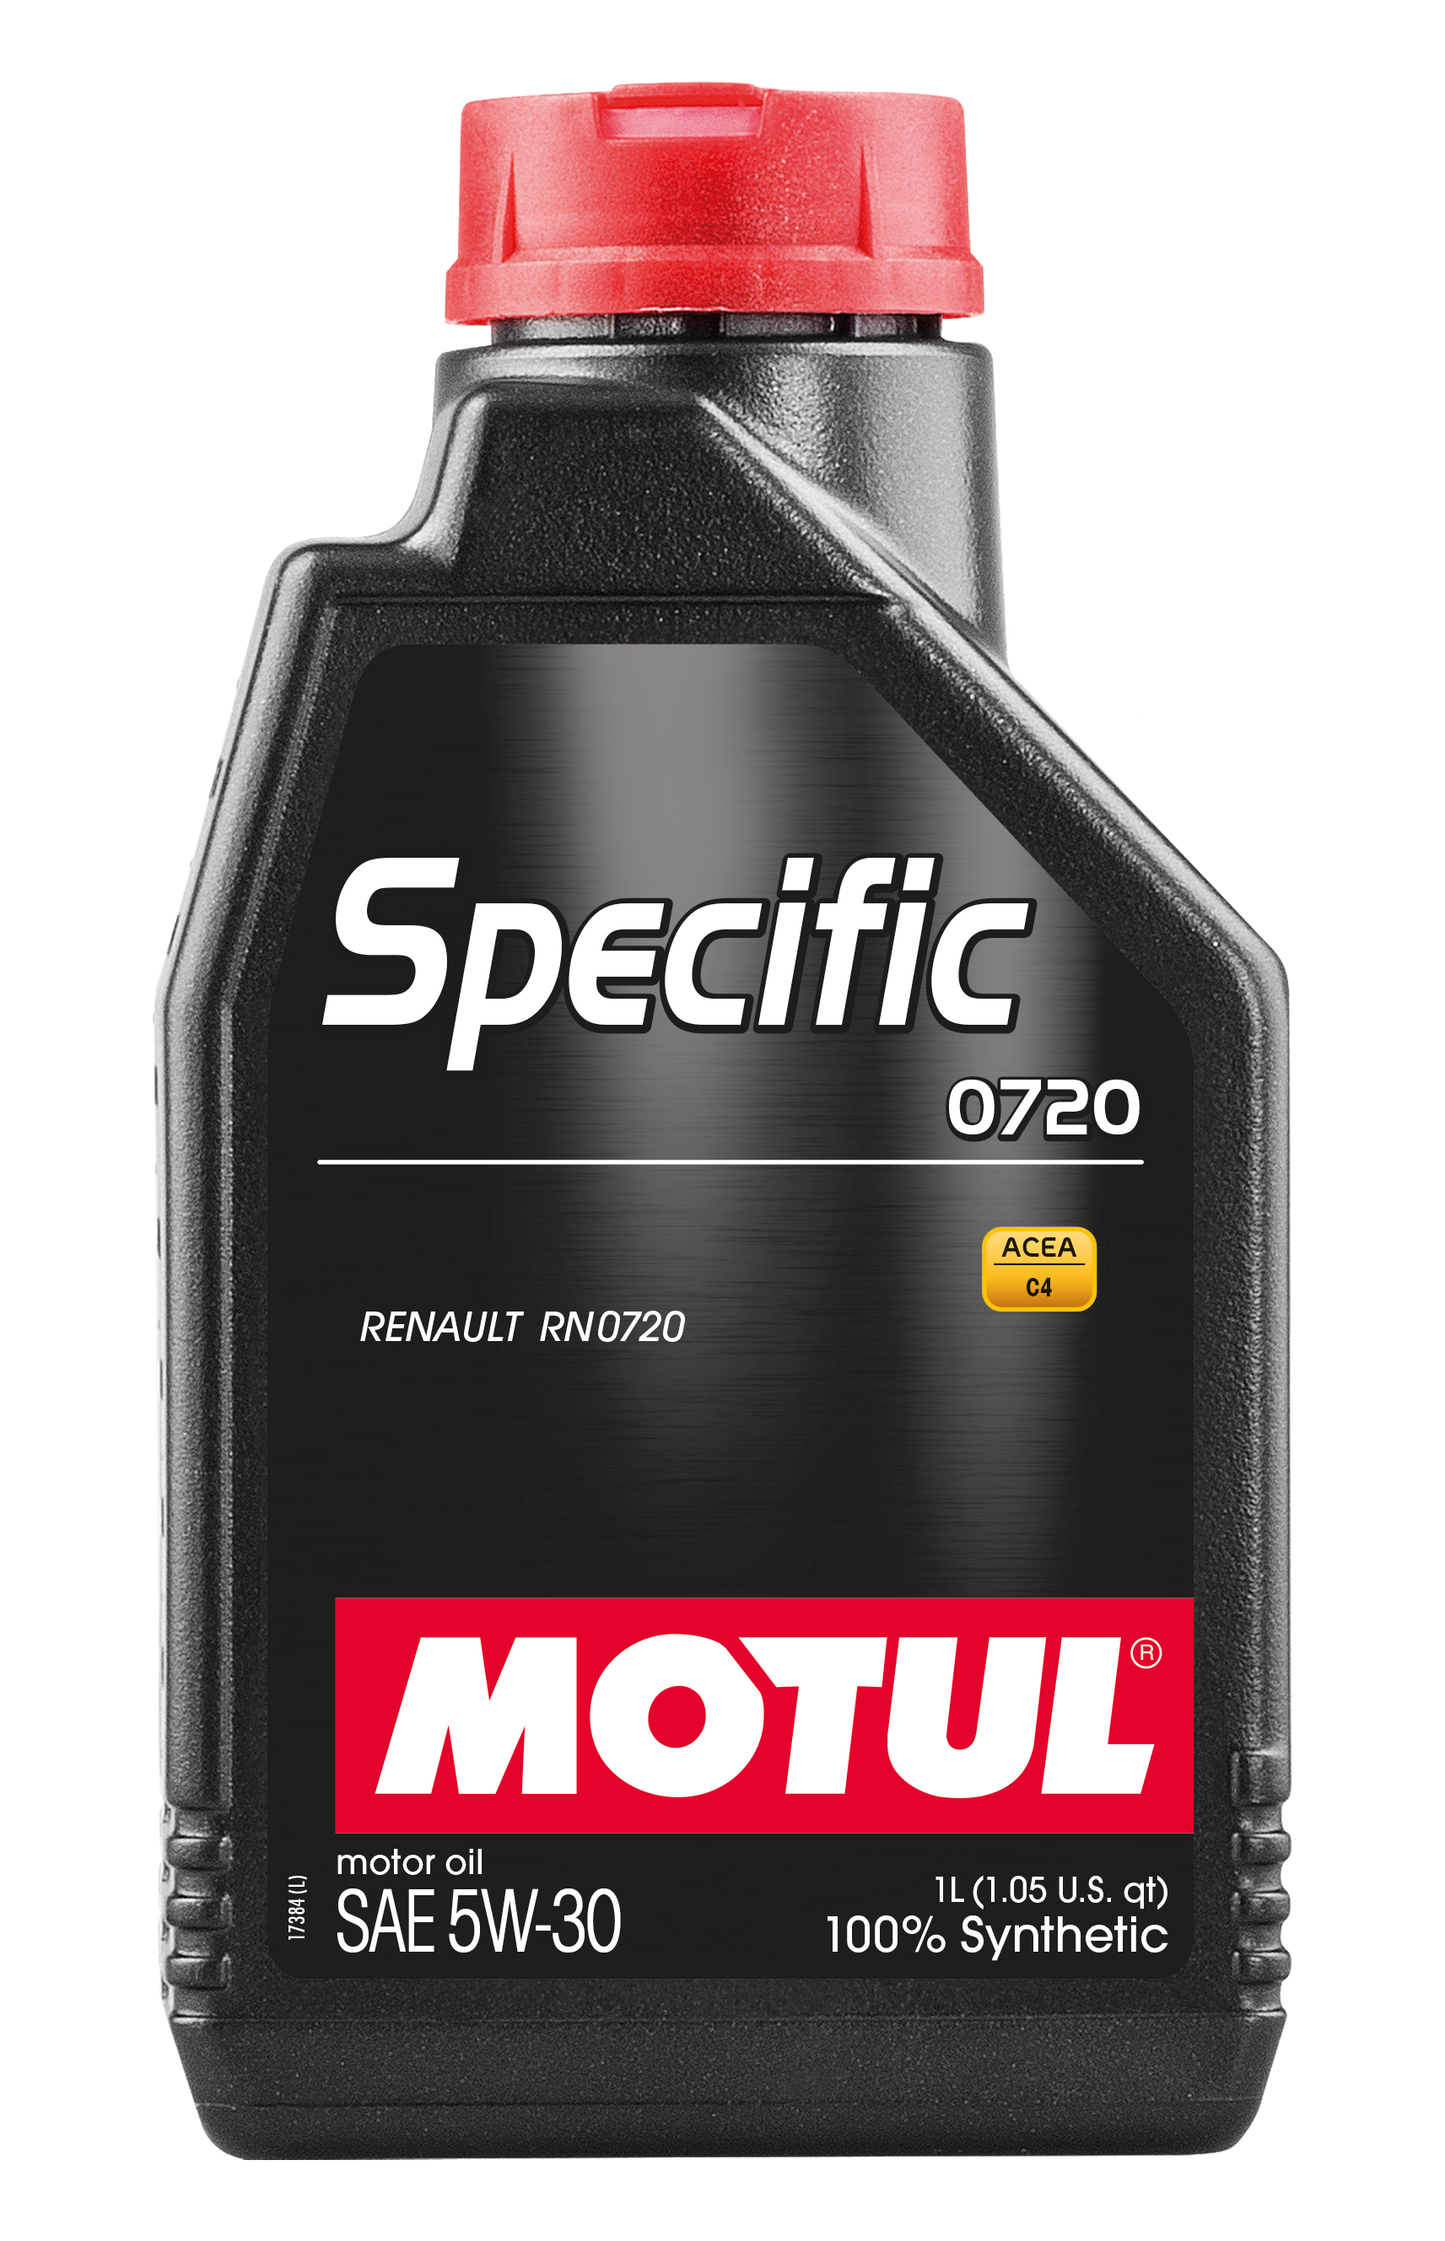 Motul SPECIFIC 0720 5W-30, 1 liter